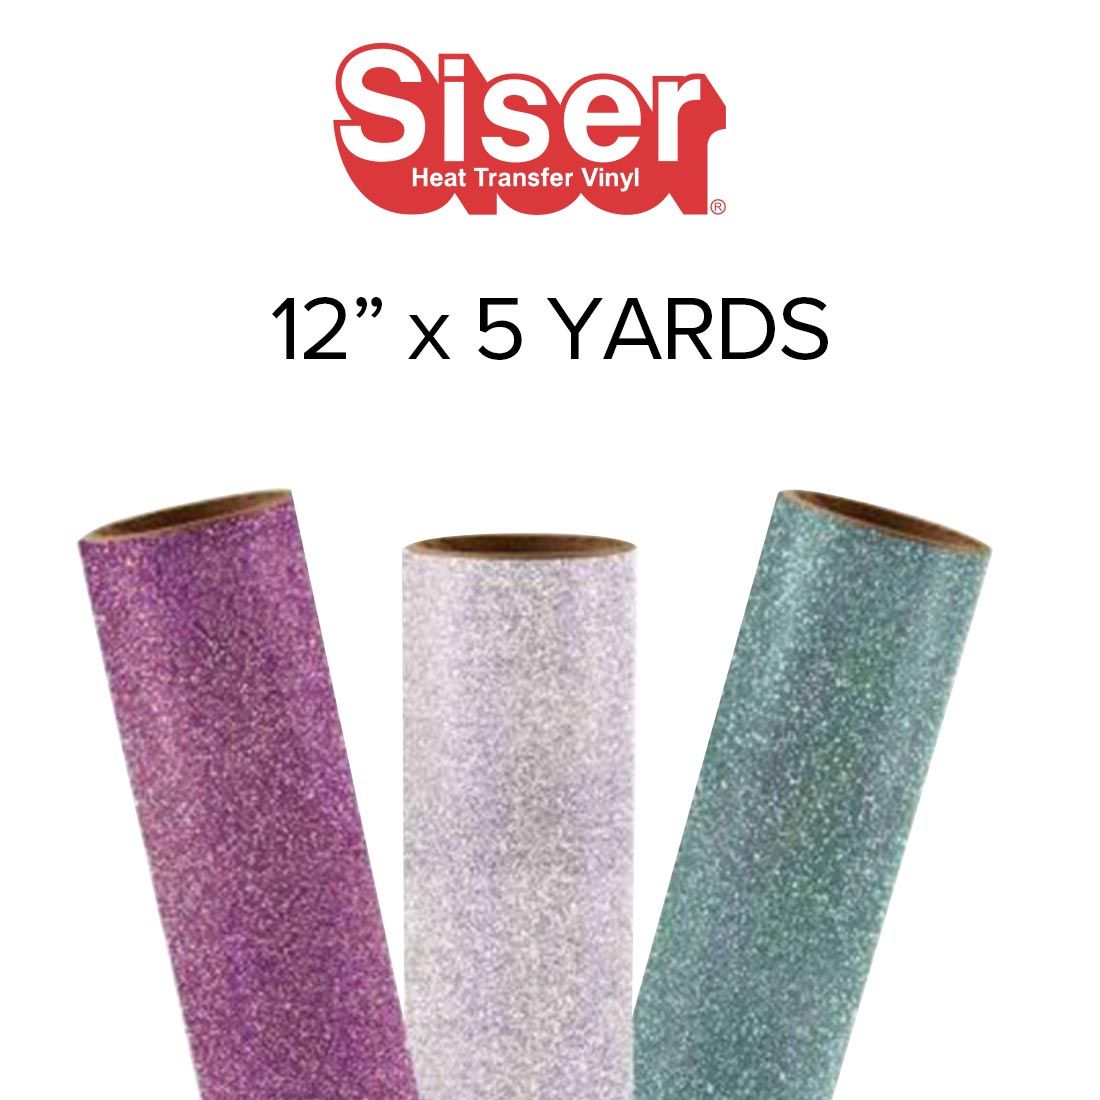 Siser Glitter 12 x 5 Yard Roll - Silver Confetti